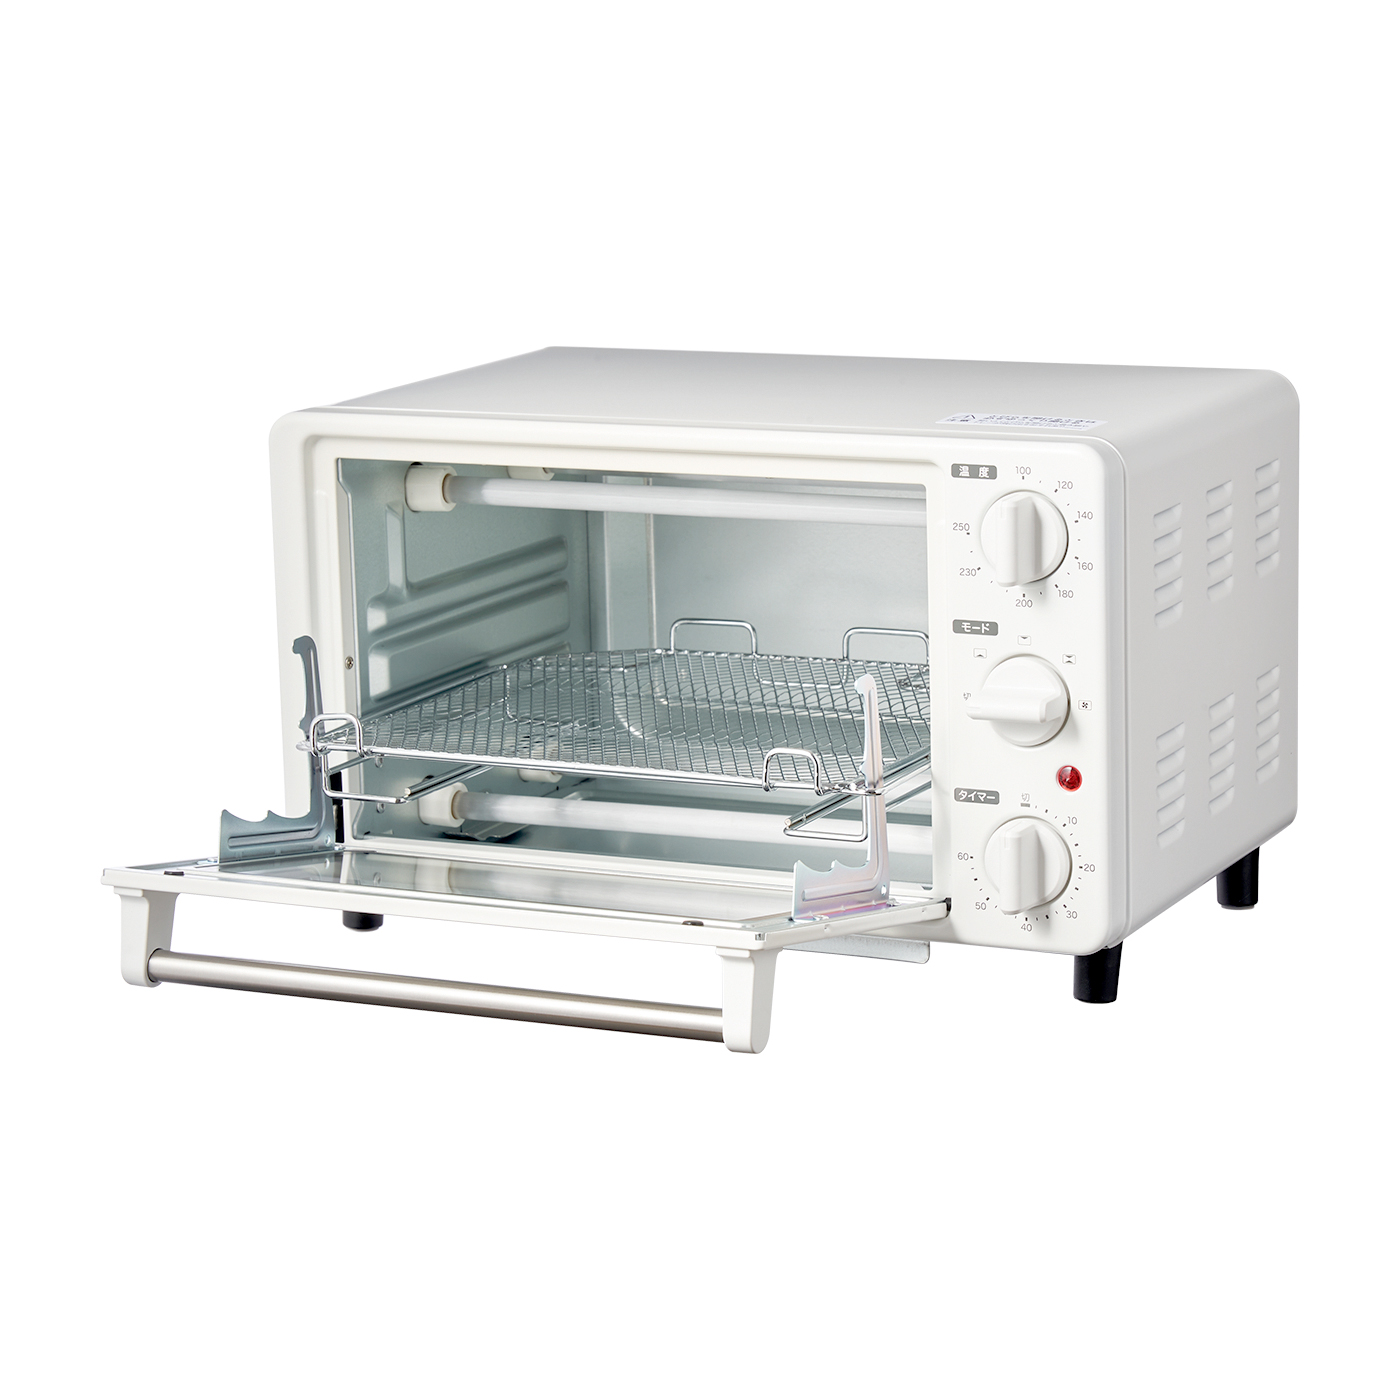 サンデン 冷蔵ショーケース 業務用 スーパー MU-230XC 2001年製